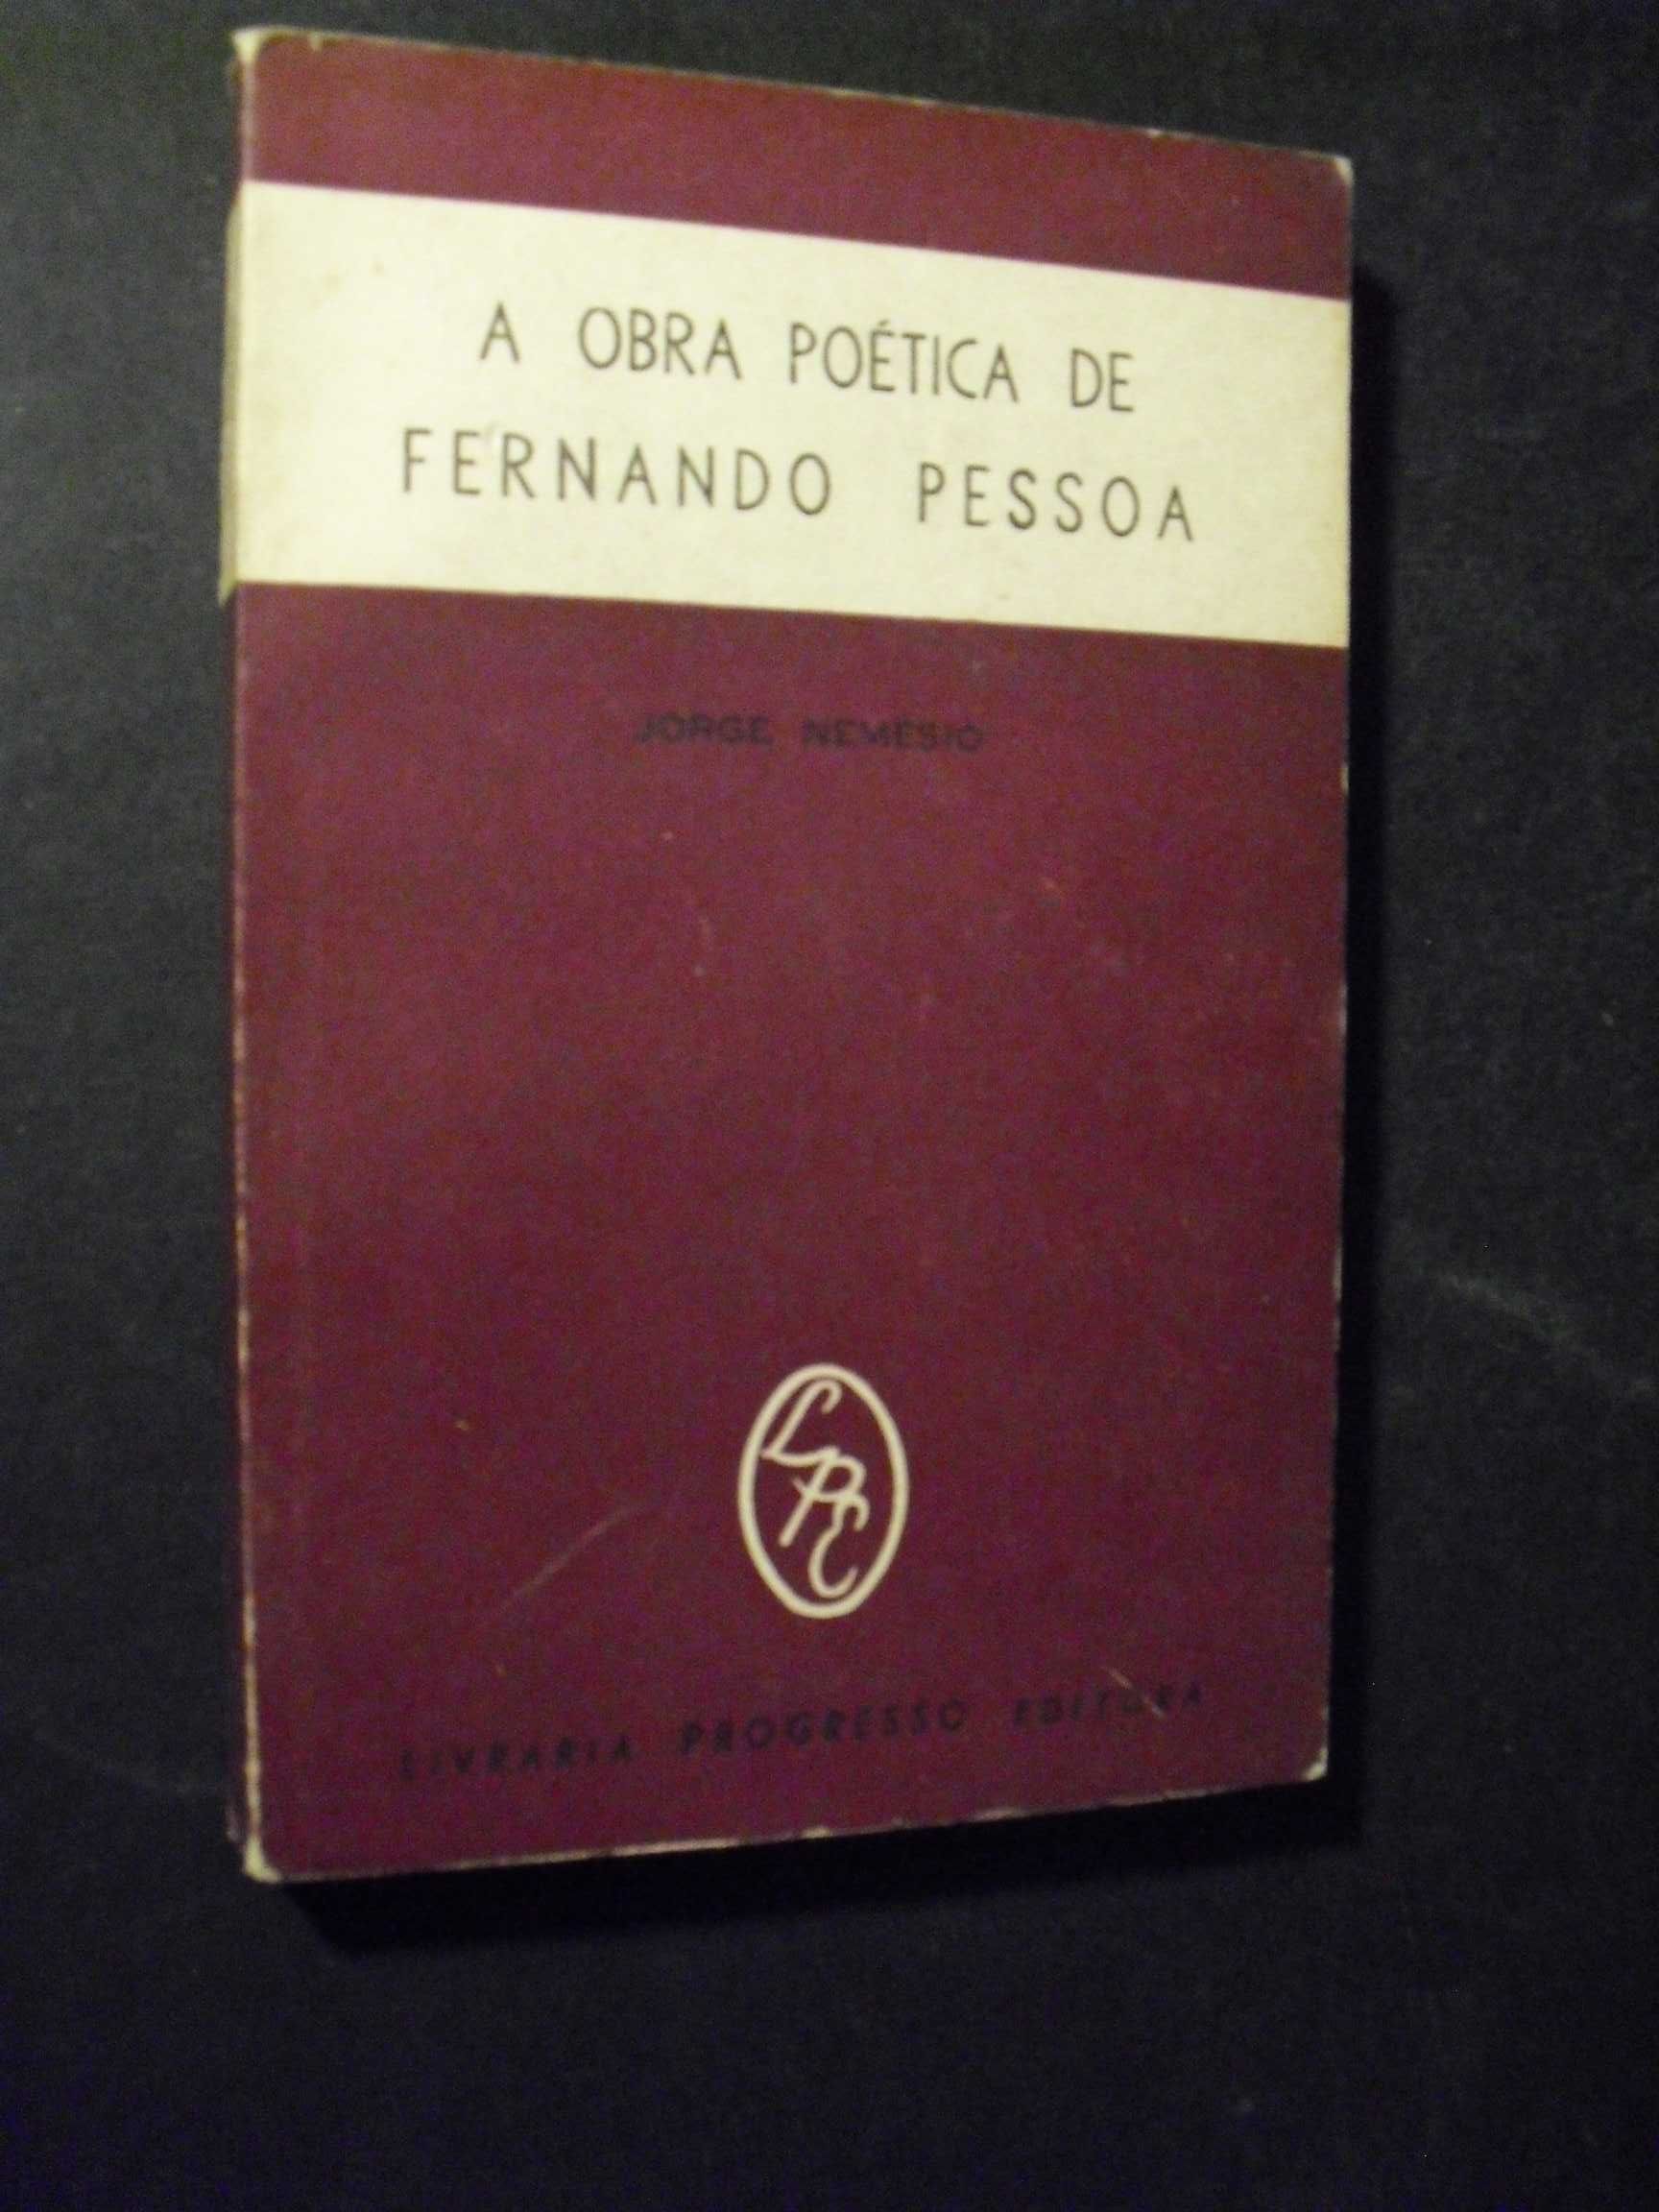 Nemésio (Jorge);A Obra Poética de Fernando Pessoa